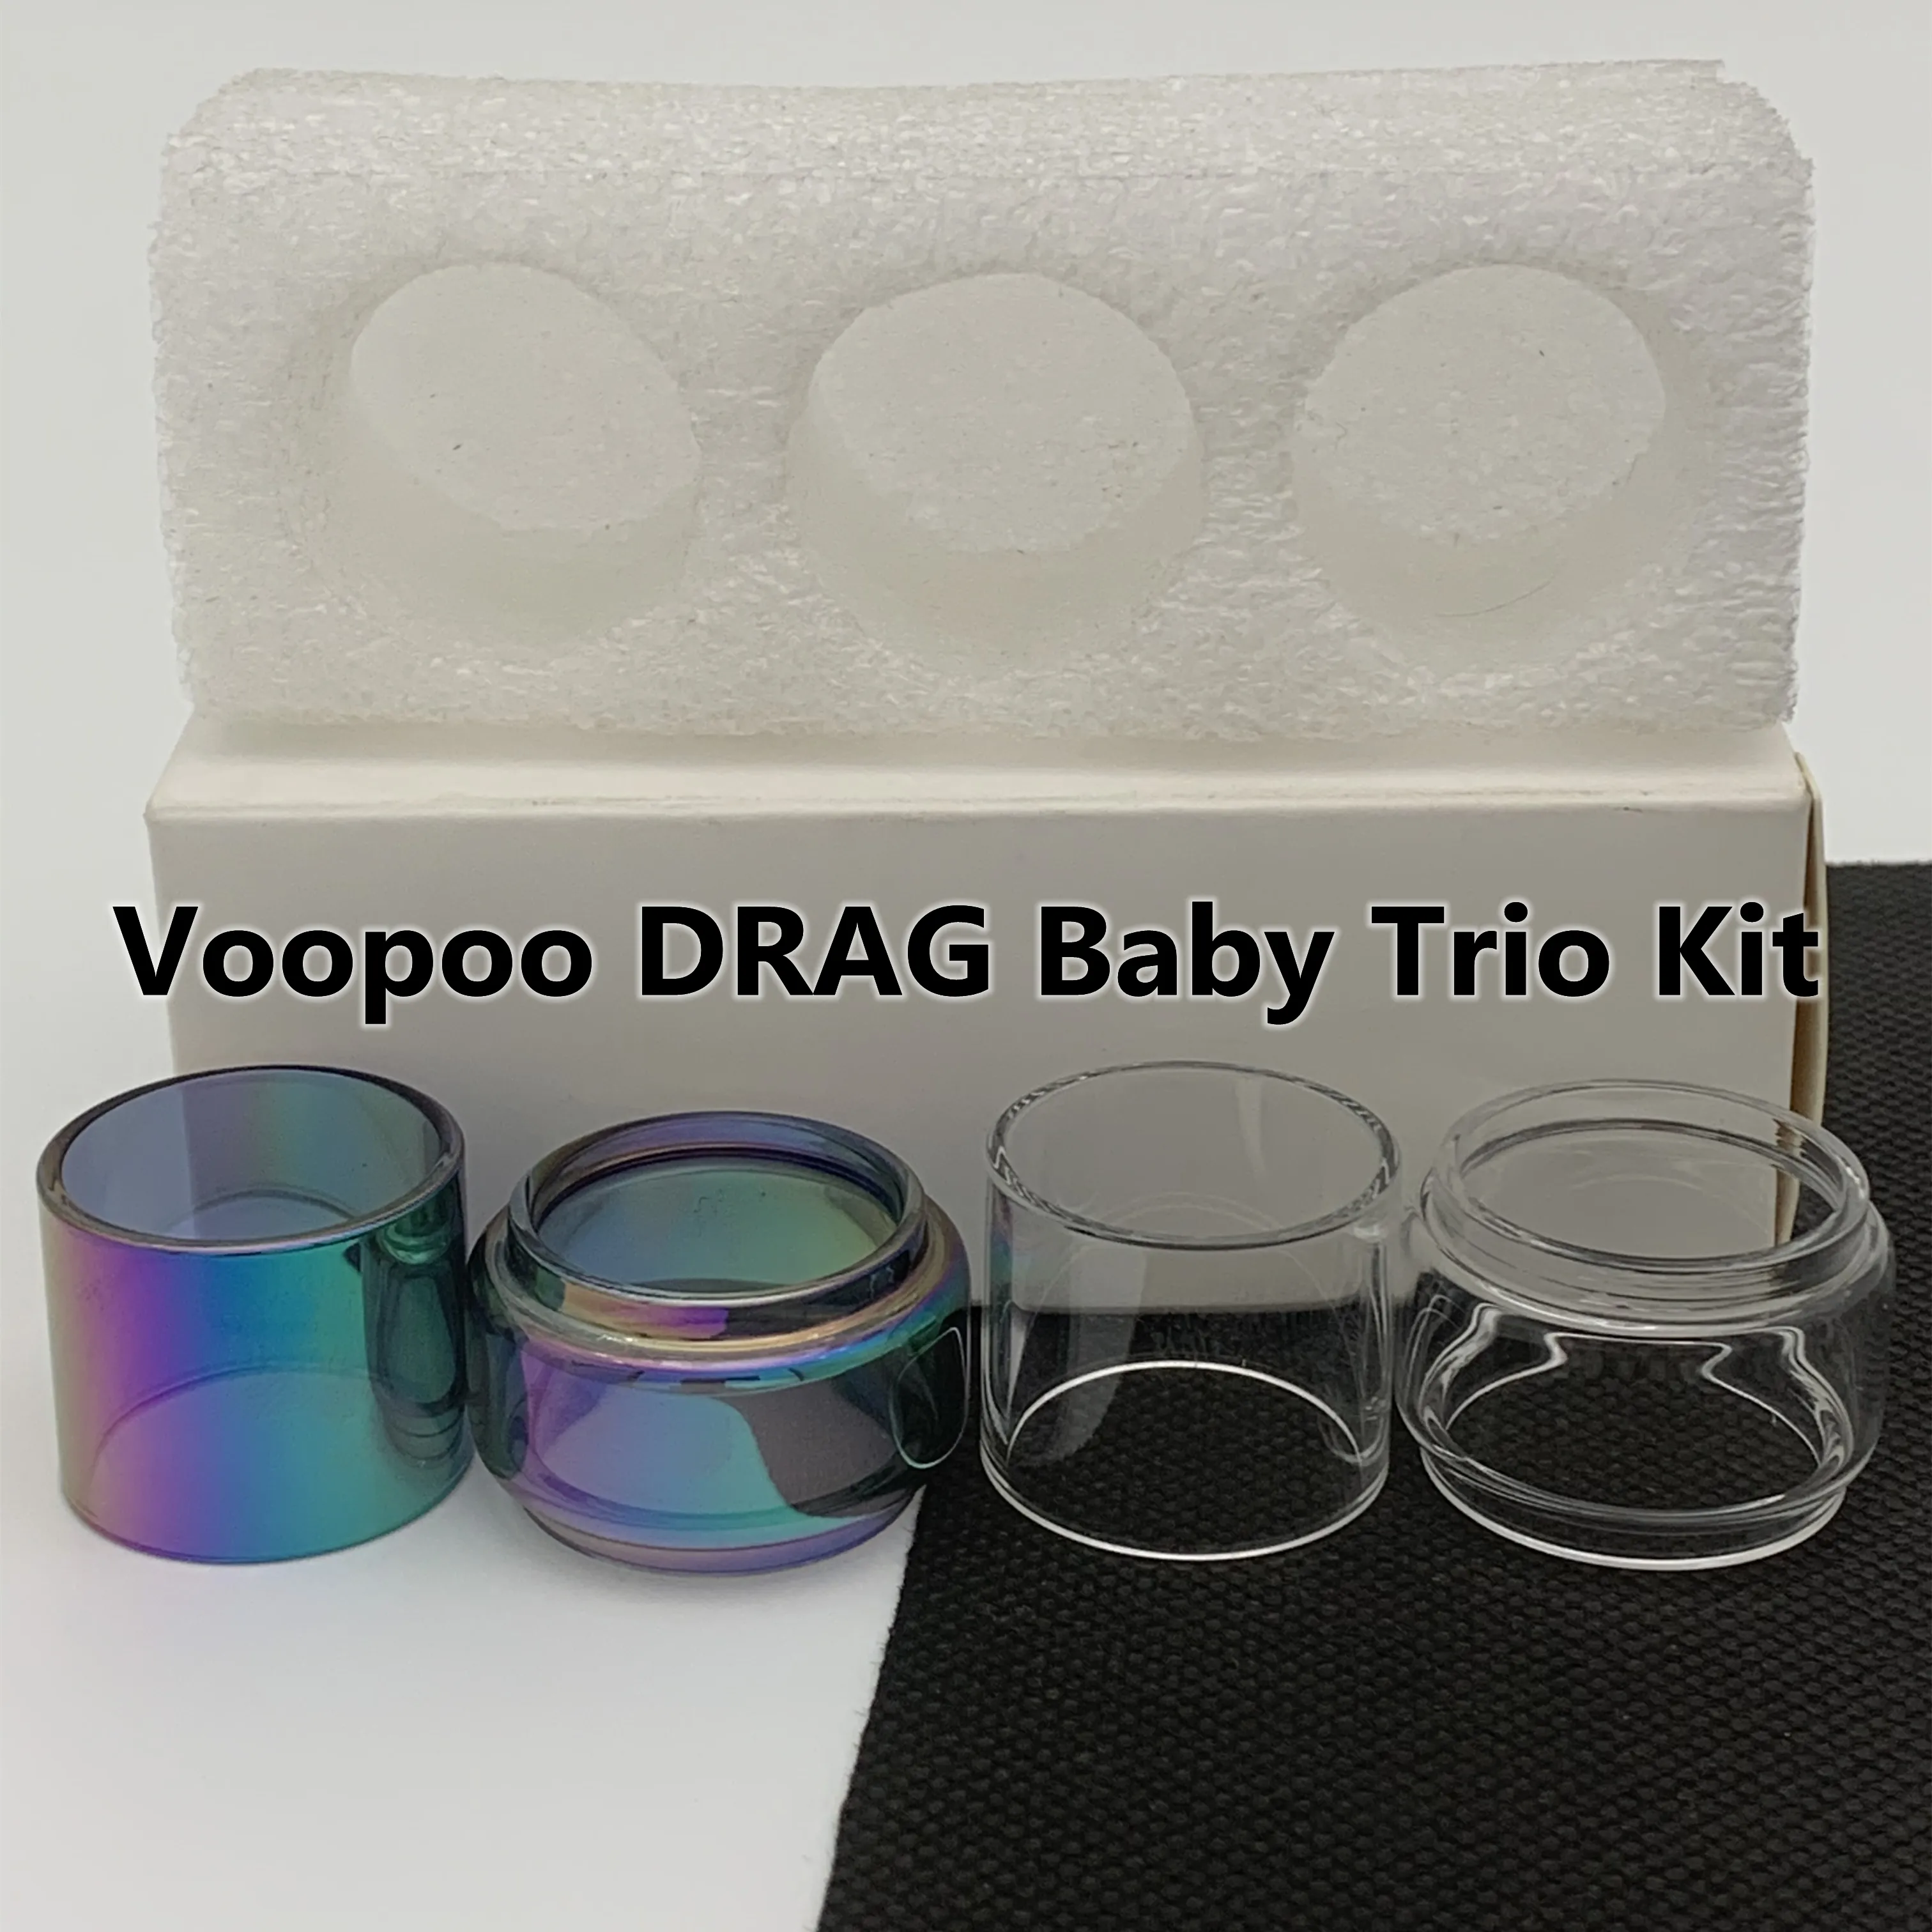 Сумка DRAG Baby Trio Kit Обычная трубка 1,8 мл Прозрачная сменная стеклянная трубка Прямая стандартная классическая 3 шт./кор. Розничная упаковка